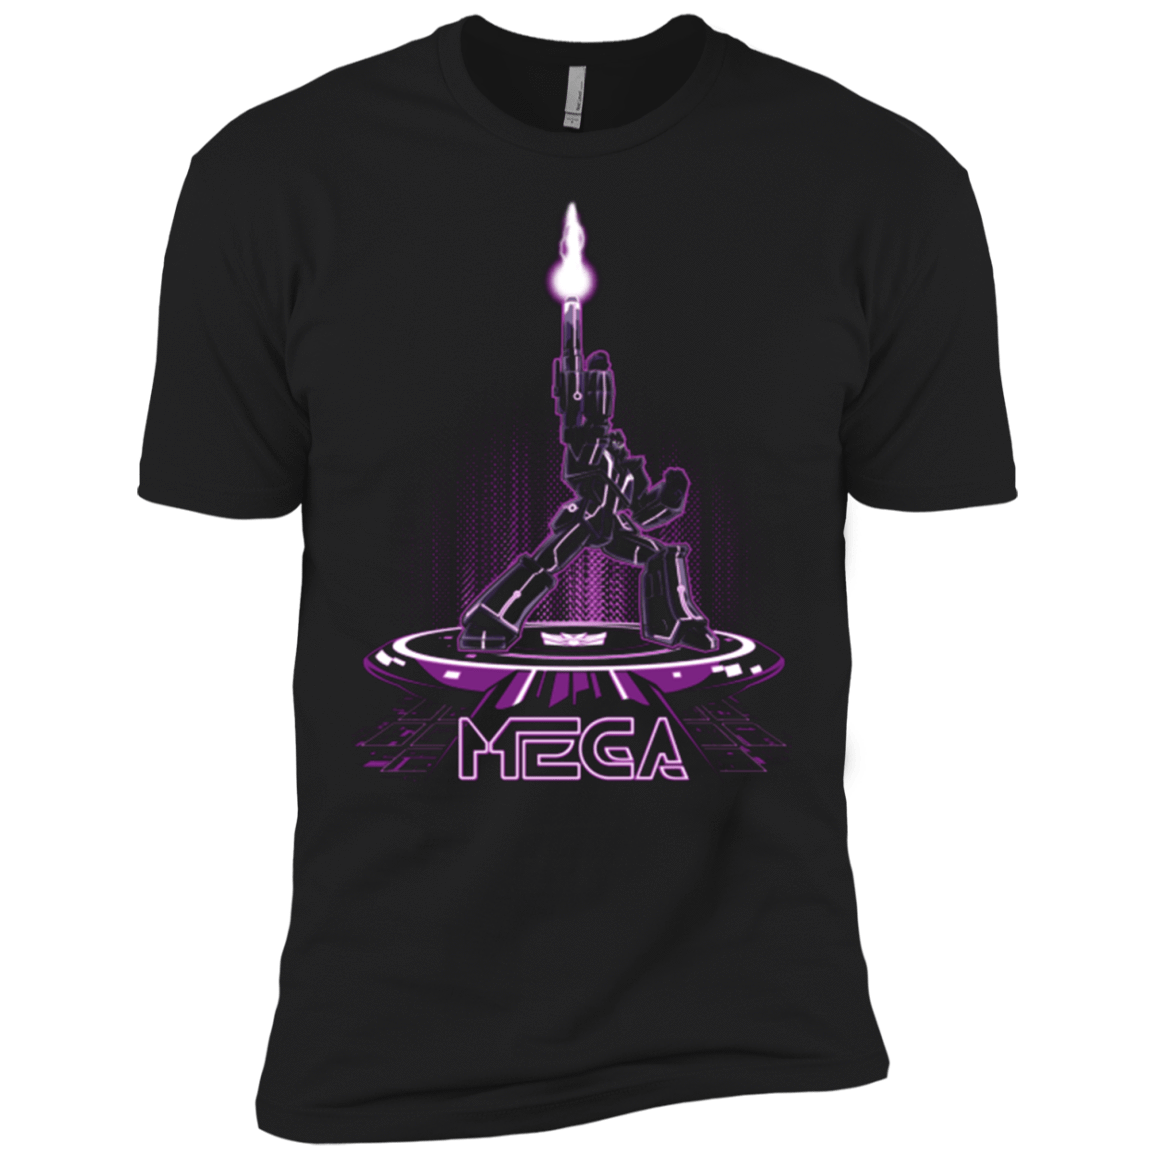 T-Shirts Black / X-Small MEGA (Tron) Men's Premium T-Shirt